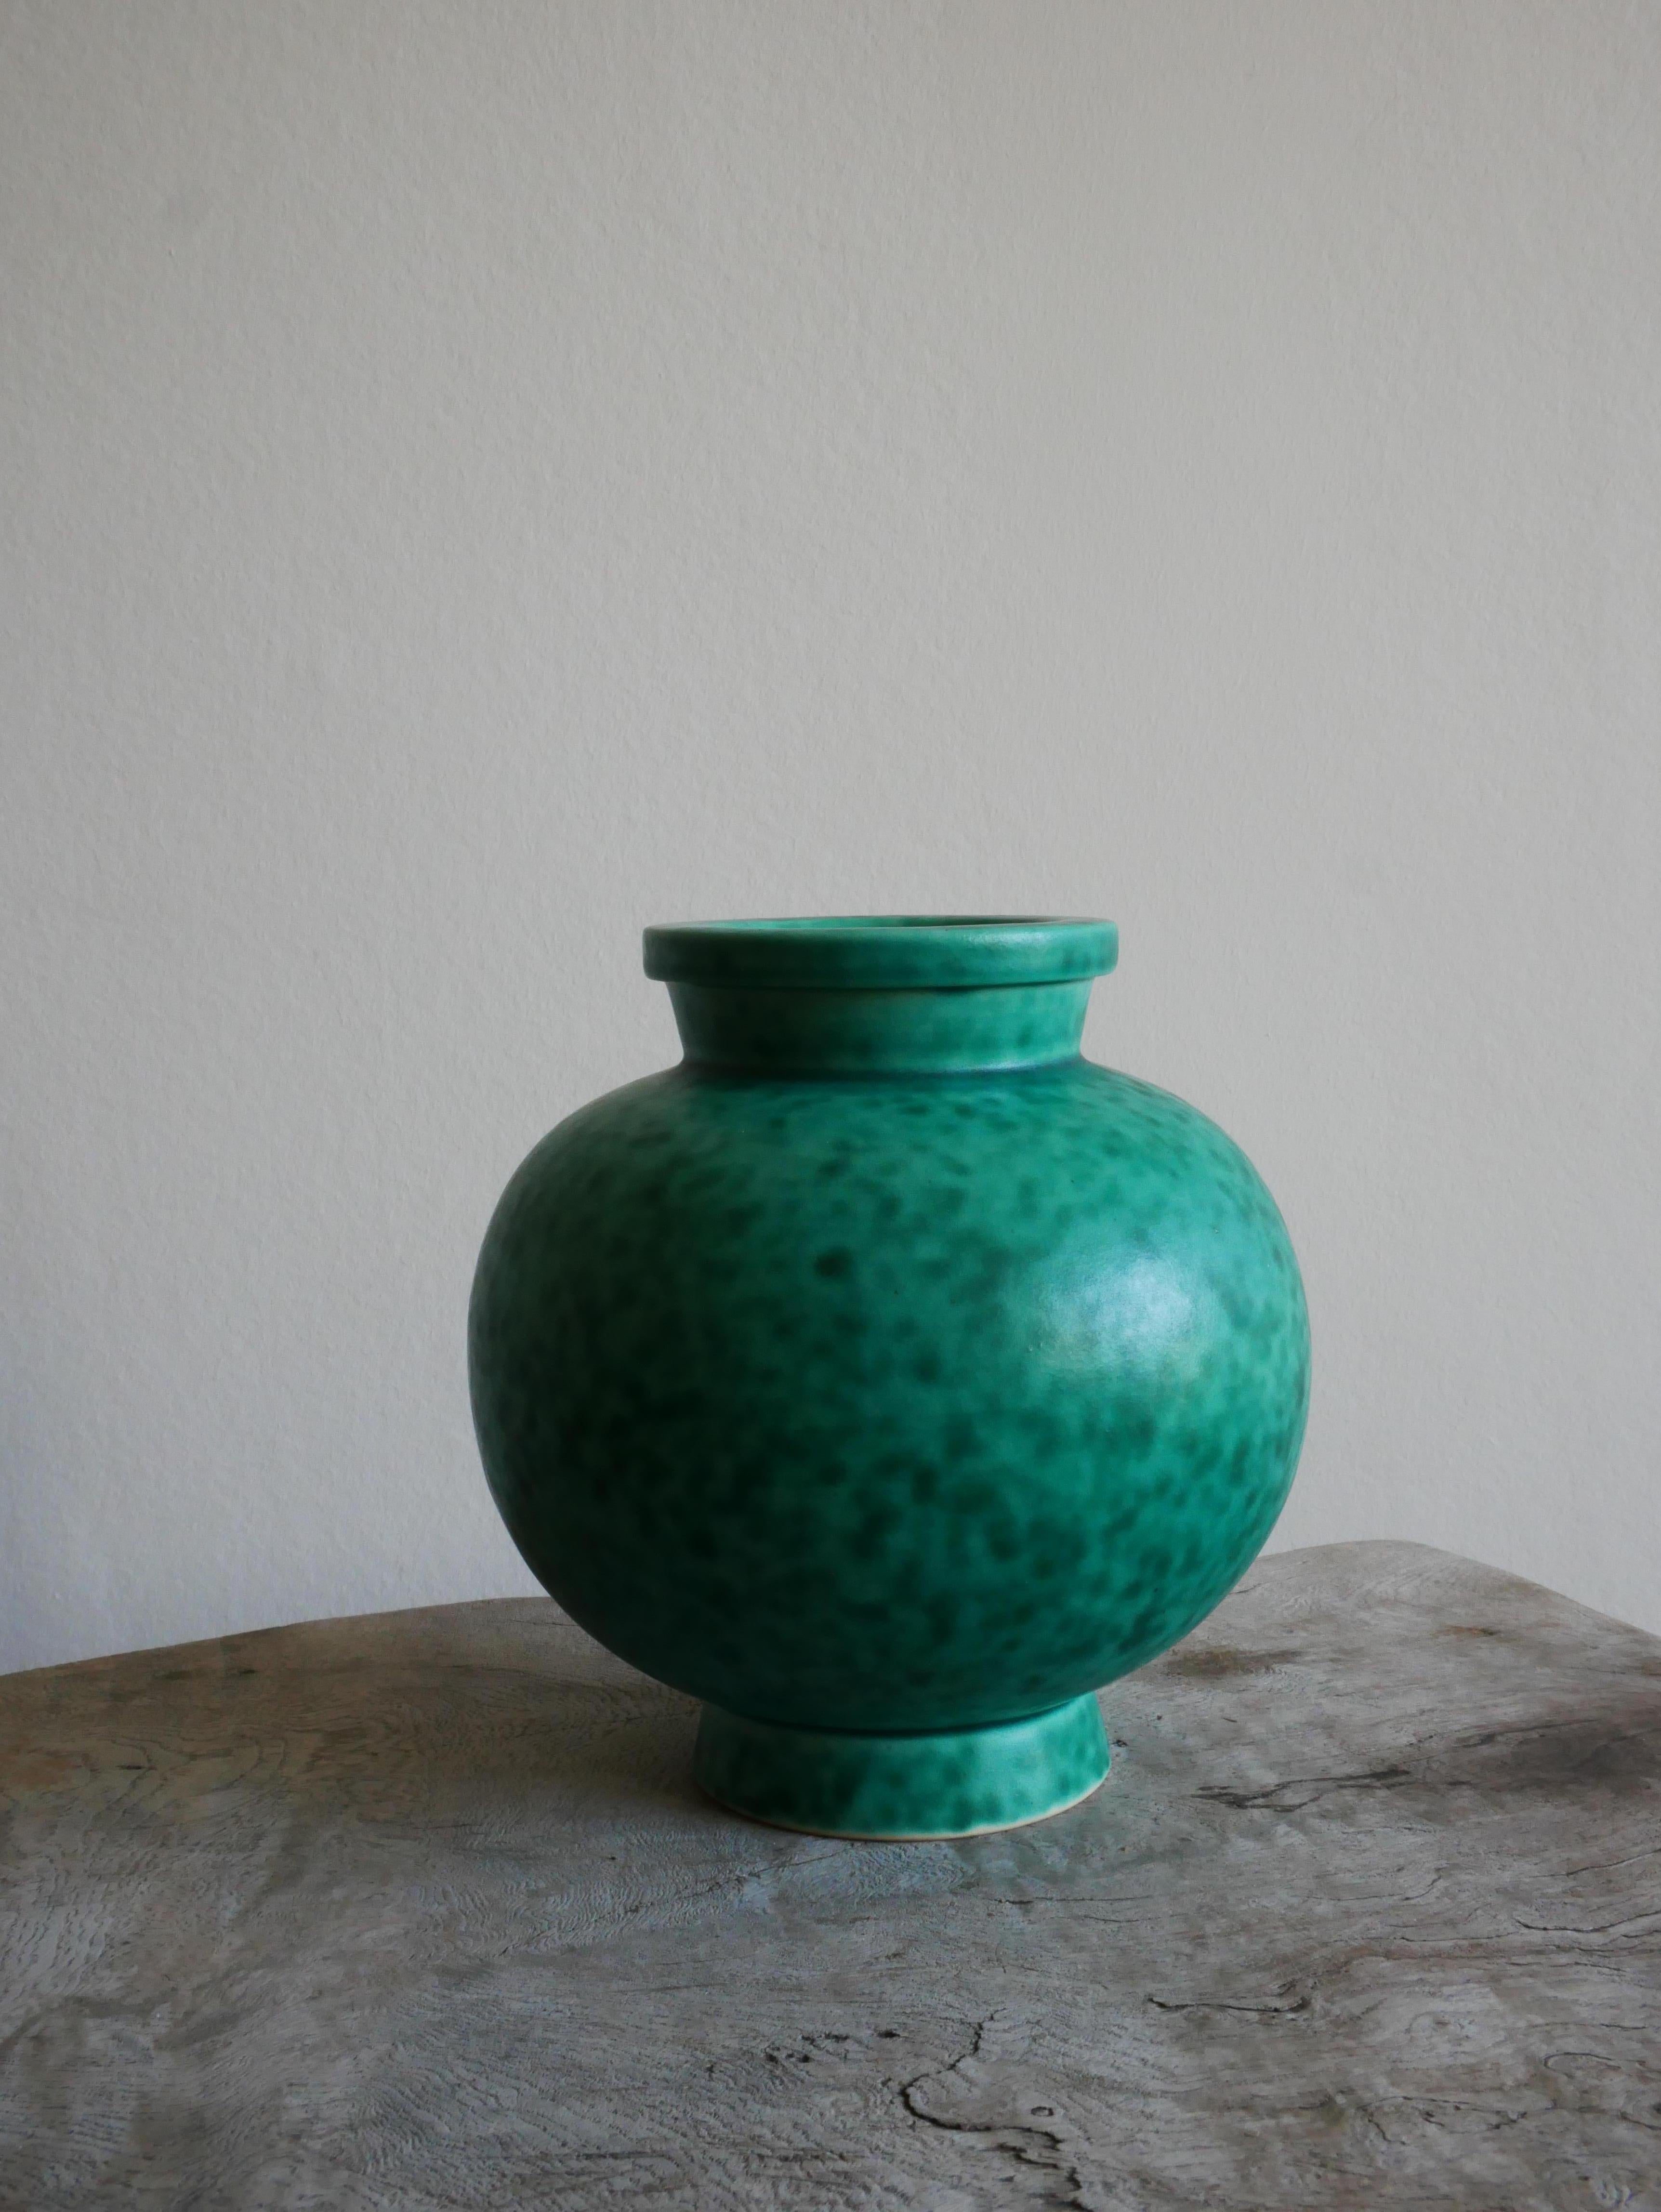 Argenta-Kollektion aus den 1930er Jahren von Wilhelm Kåge für Gustavsberg-
Die ikonische Vase in Argenta mit ihrer grünen Glasur ist eines der bekanntesten Designs von Wilhelm Kåge. Es wurde Ende der 1920er Jahre entworfen und erstmals 1930 auf der